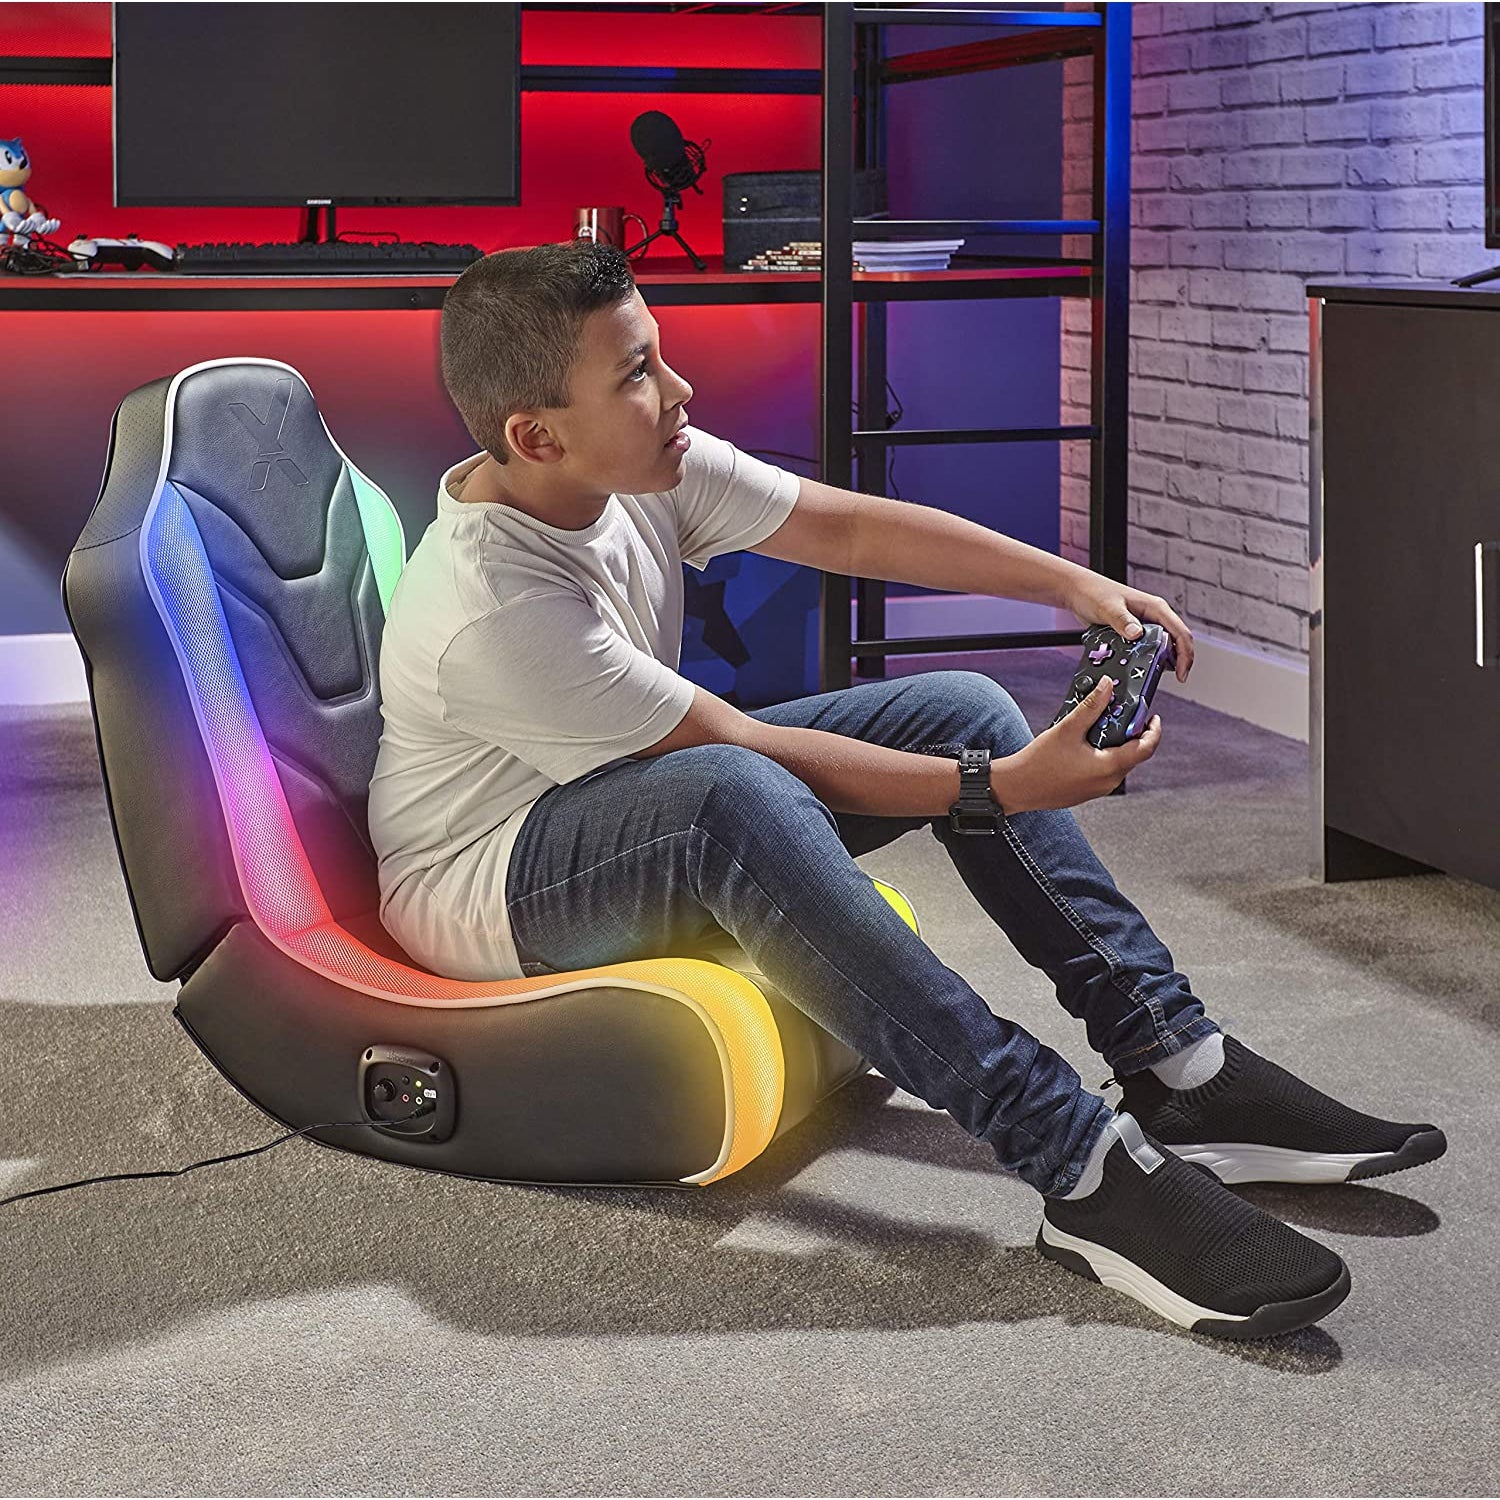 XRocker Chimera RGB Neo Motion Stereo LED Gaming Chair